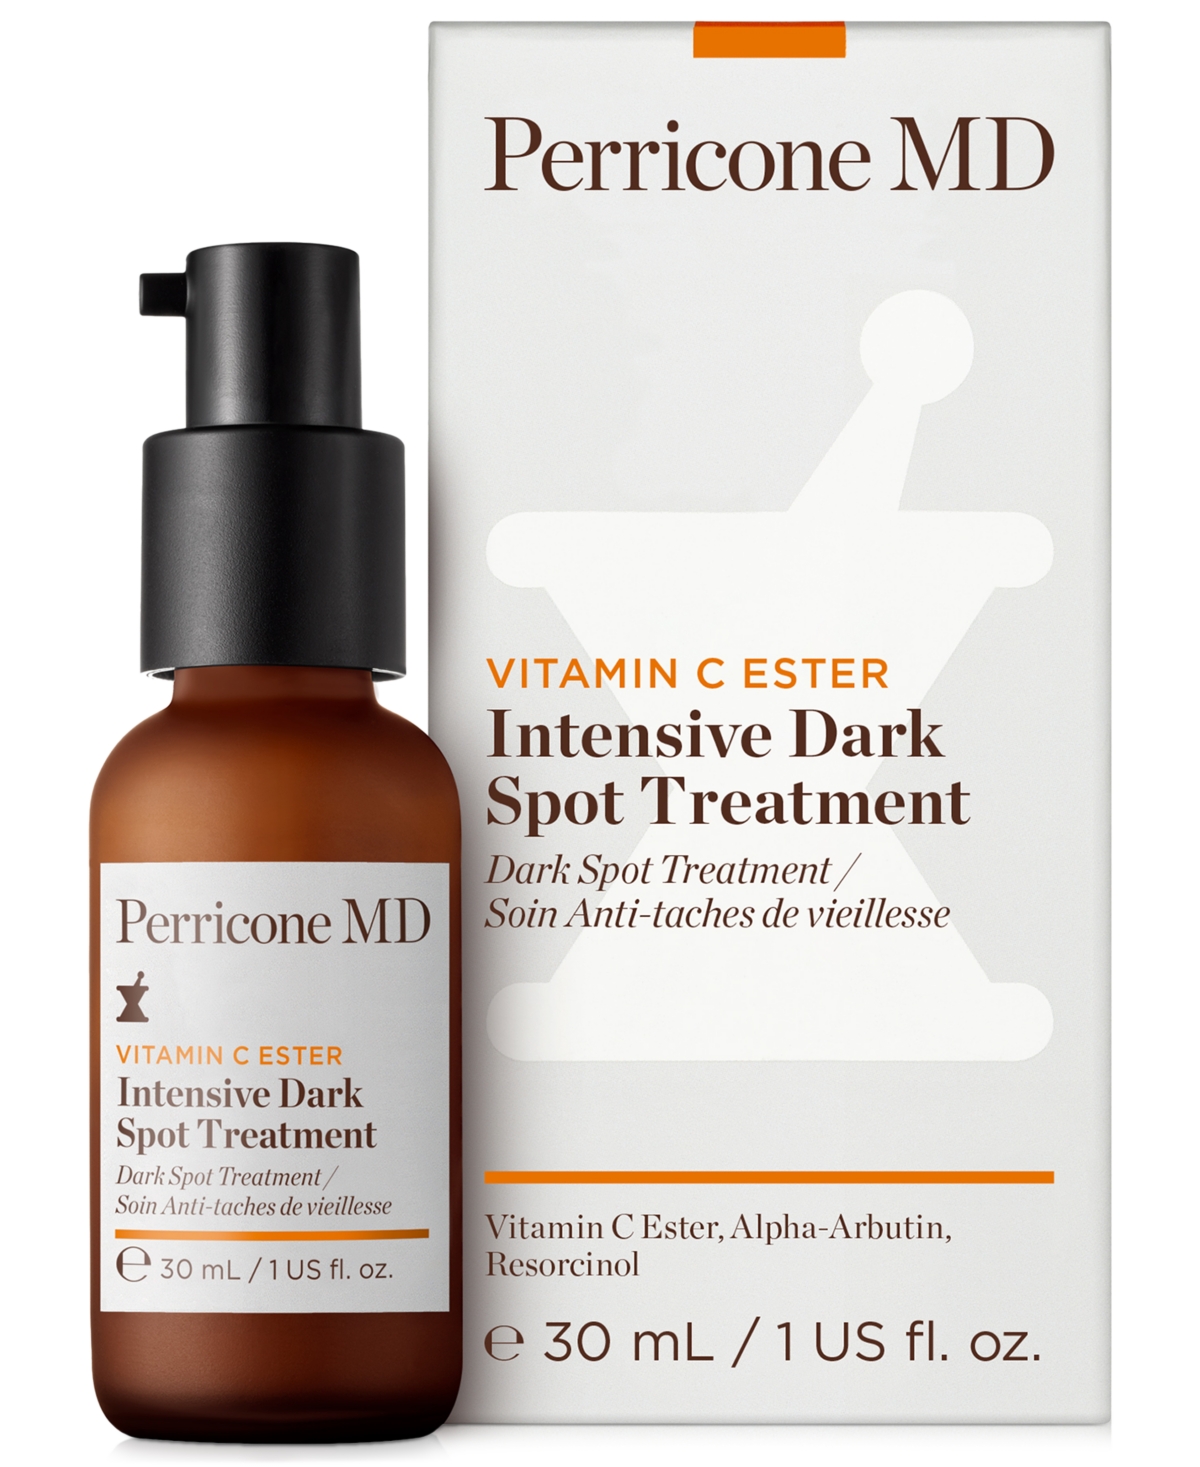 Perricone Md Vitamin C Ester Intensive Dark Spot Treatment, 1 Oz.